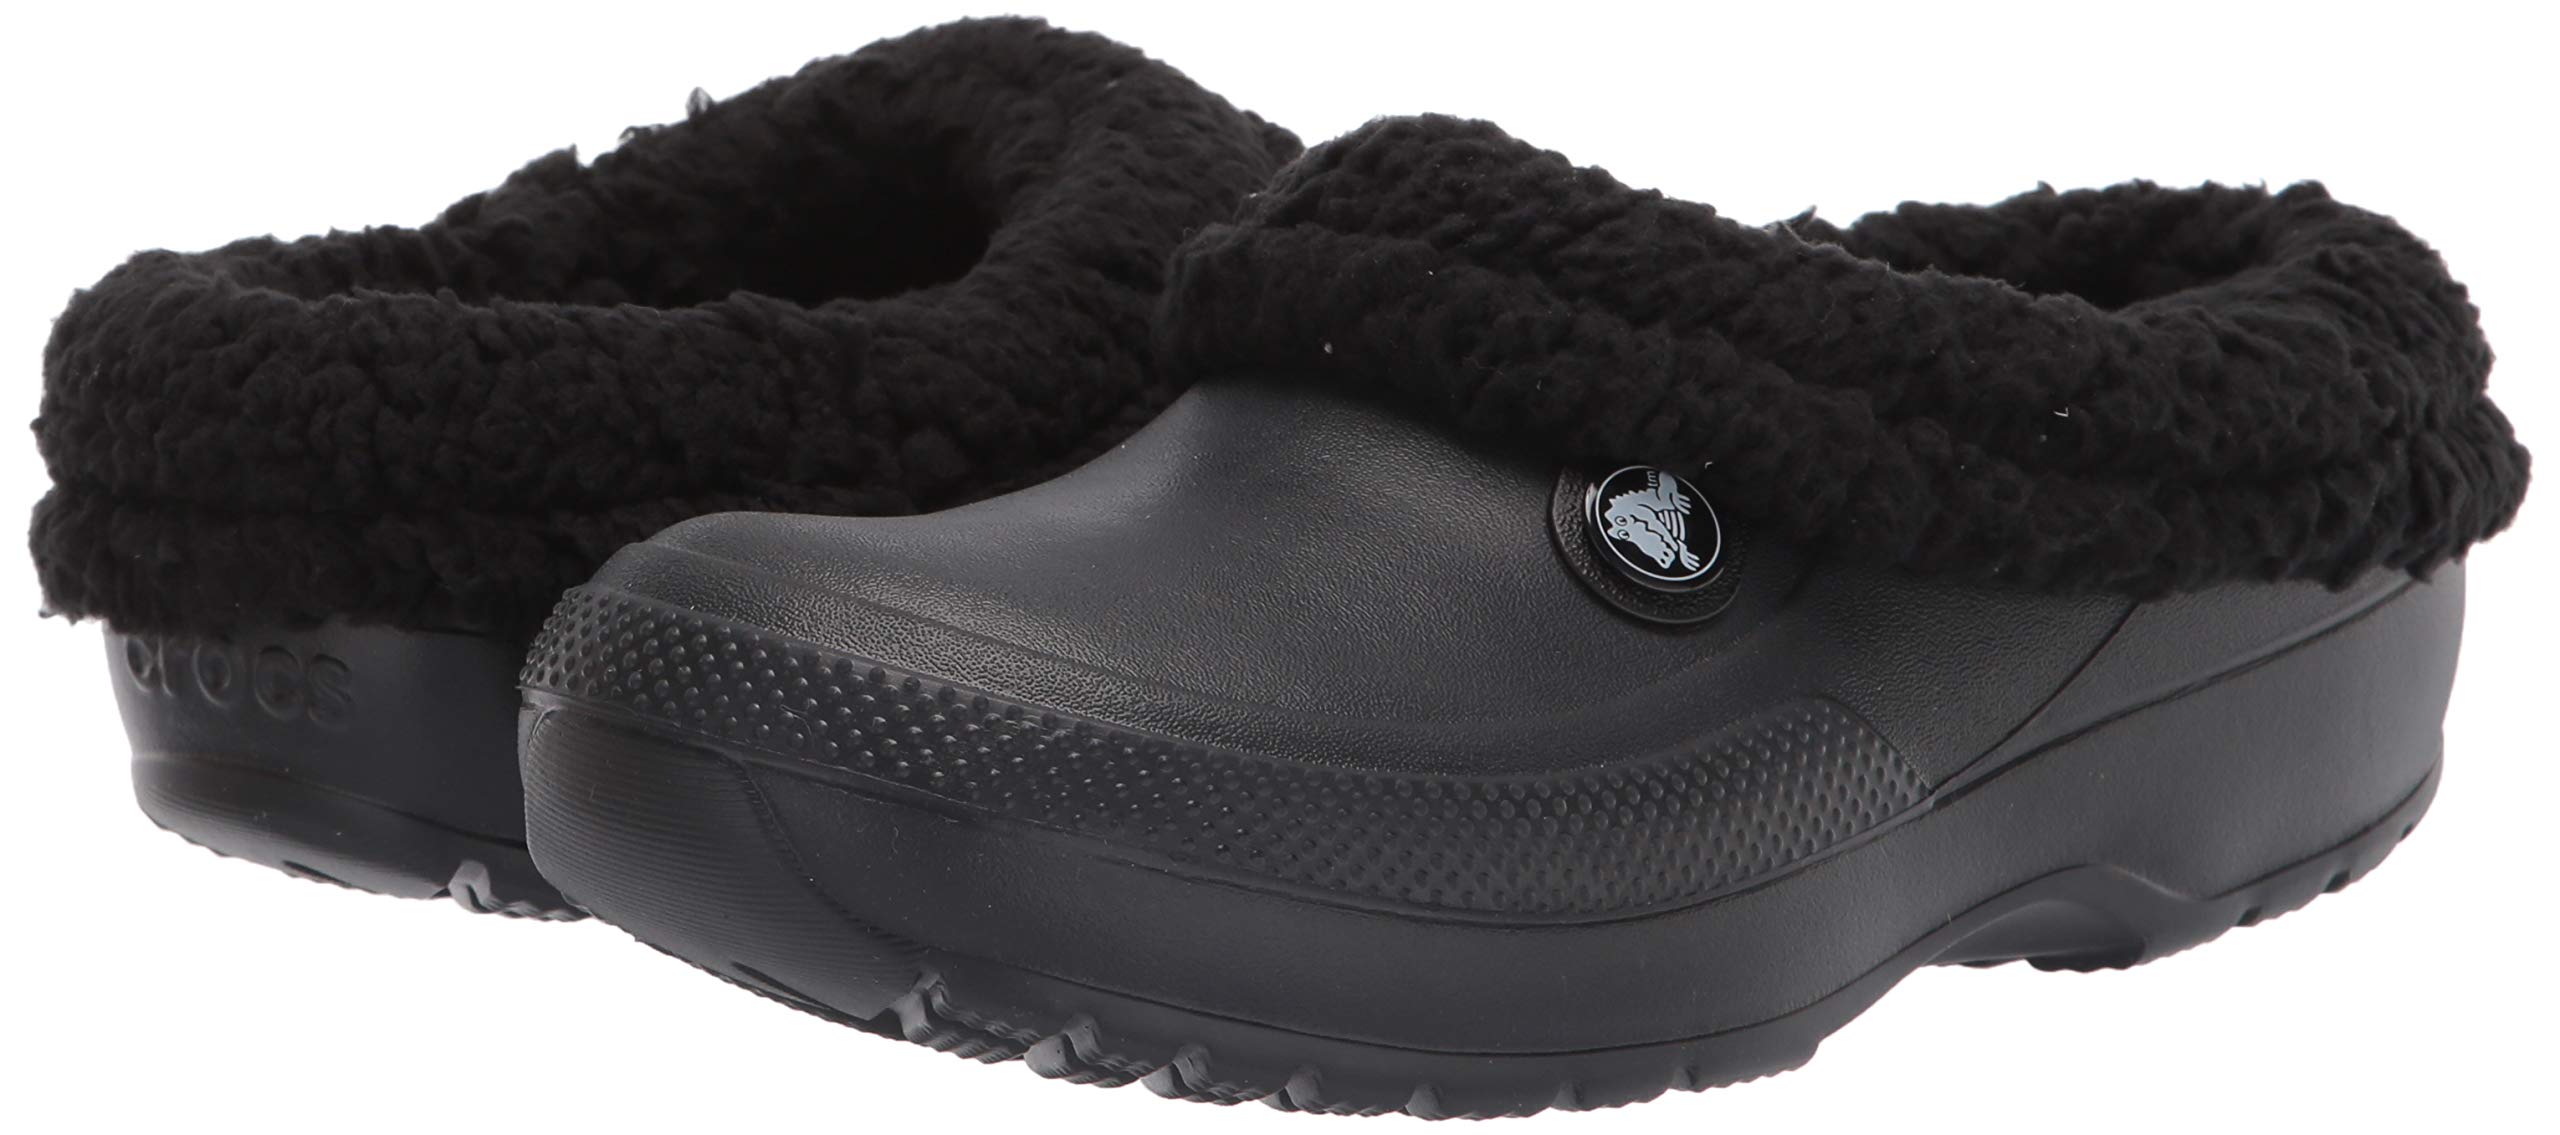 Crocs Men's and Women's Blitzen III Clog | Fuzzy Slippers